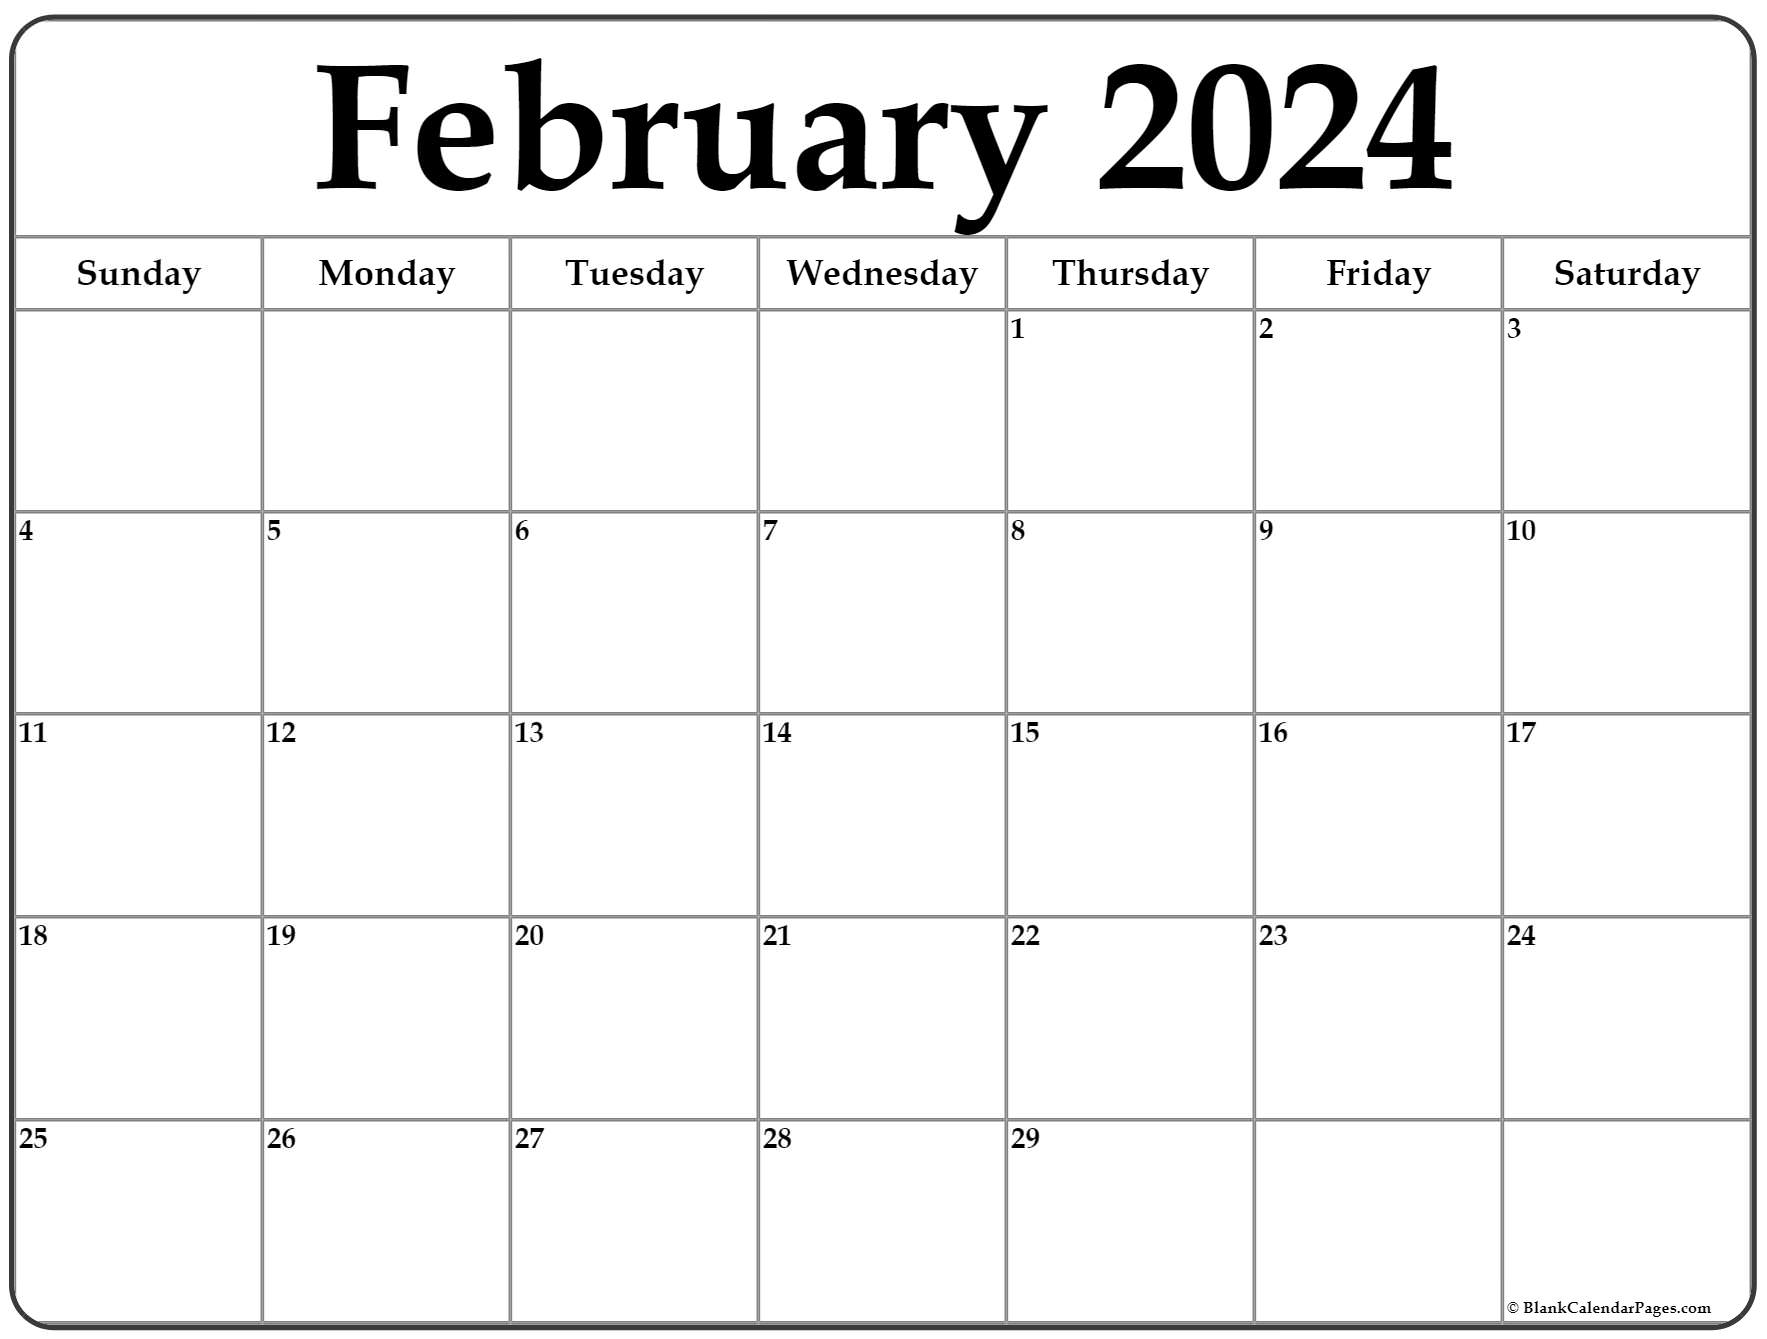 February 2024 Calendar | Free Printable Calendar for Free February Calendar 2024 Printable